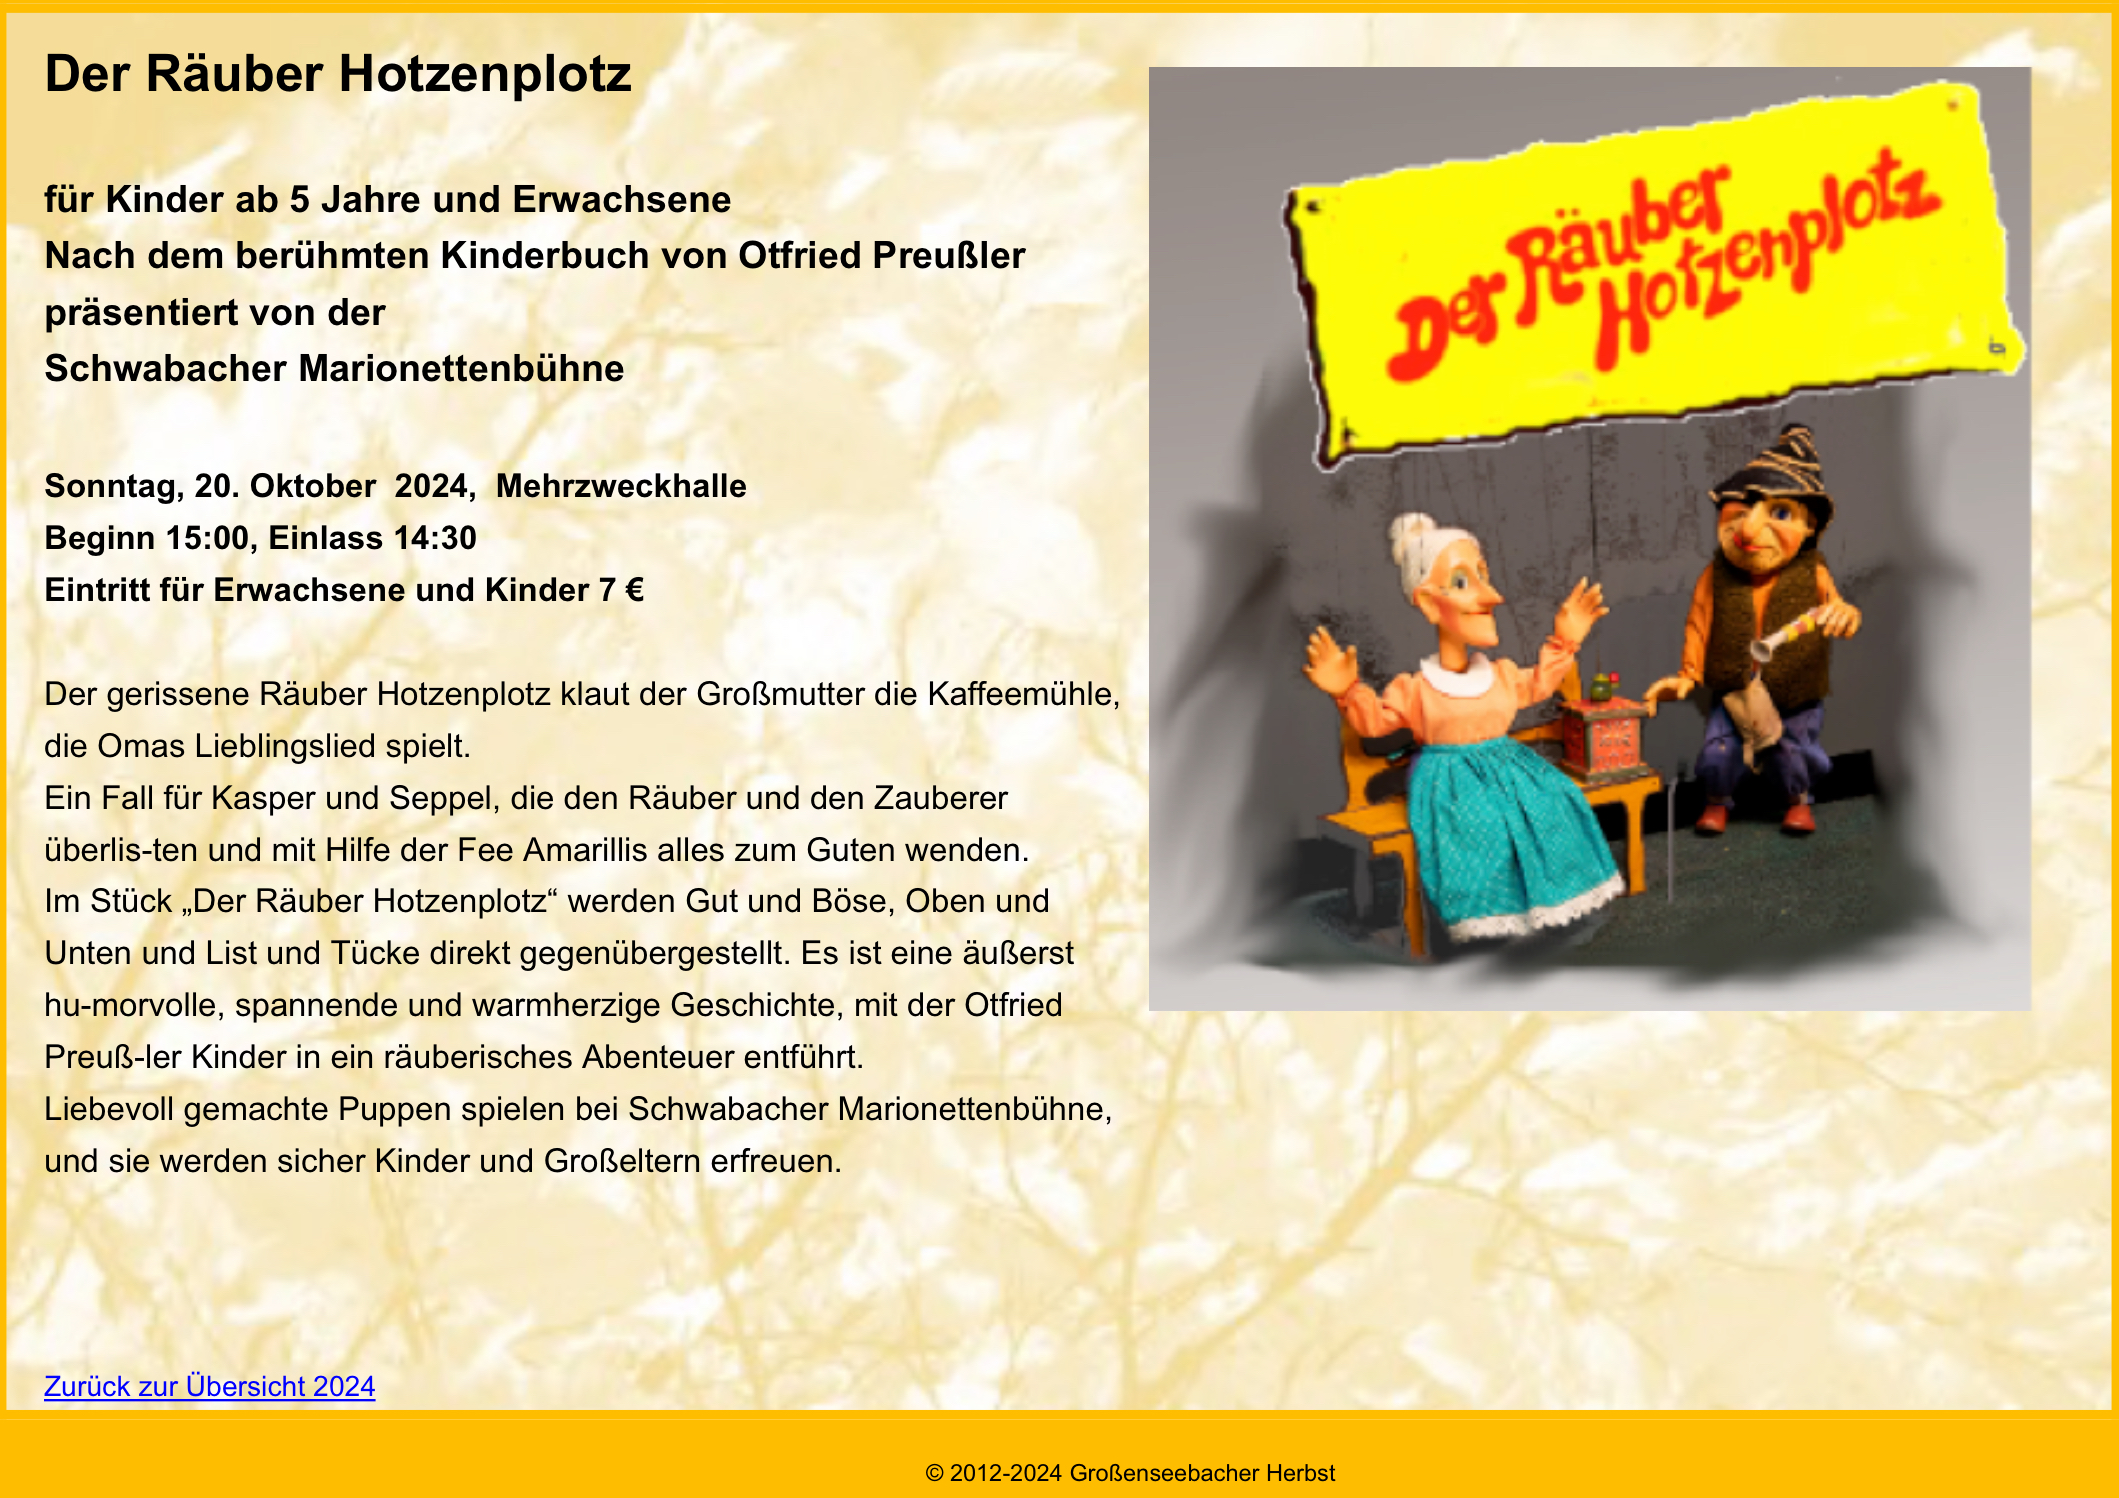 Der Räuber Hotzenplotz  /  Schwabacher Marionettenbühne